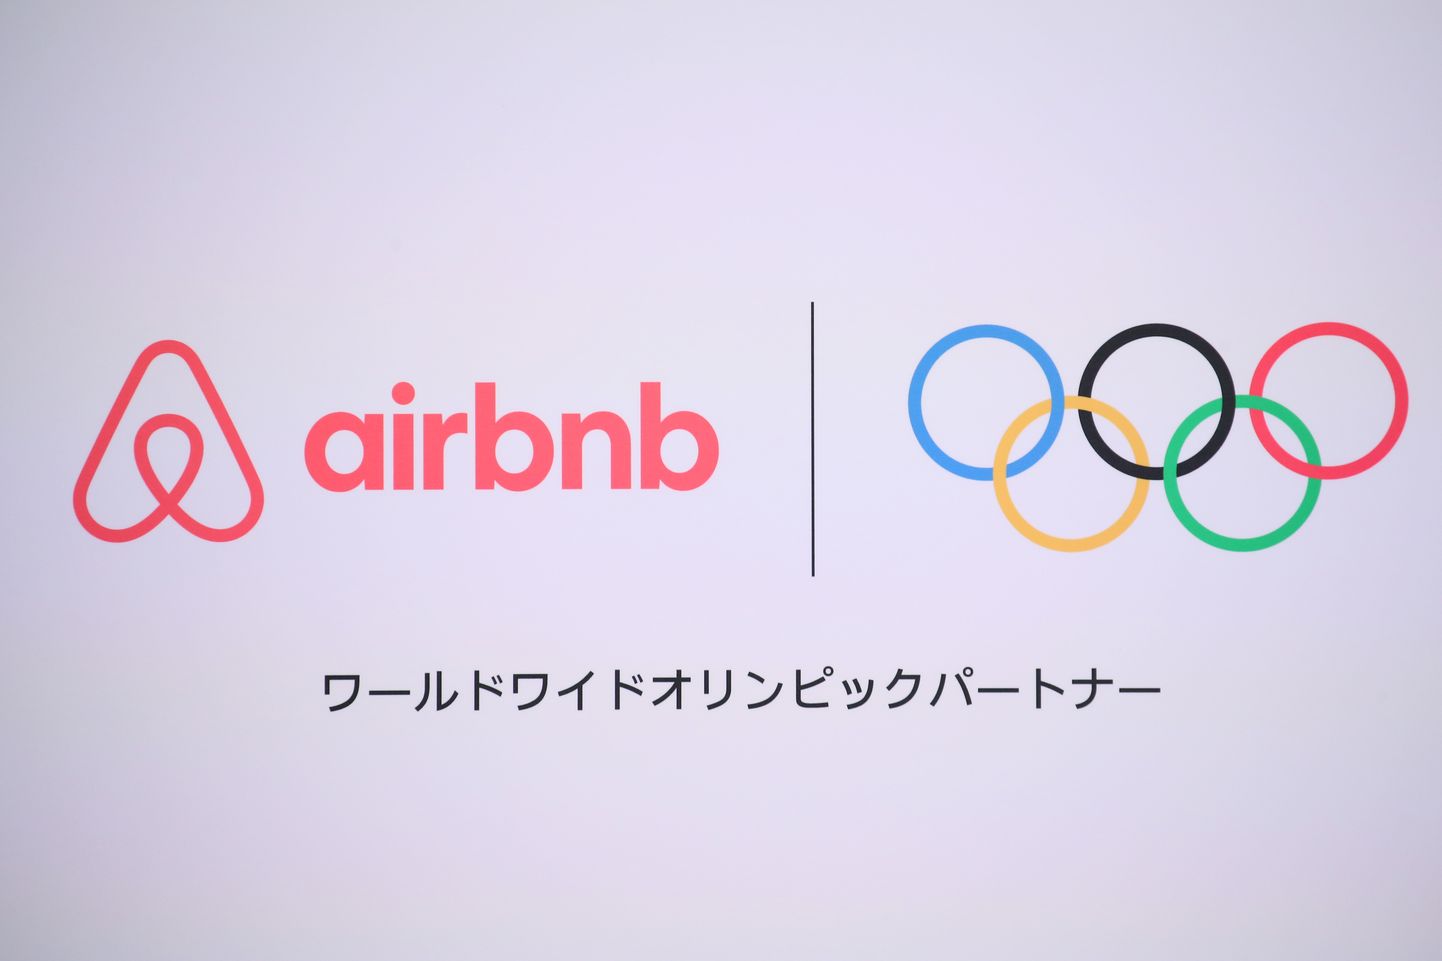 Airbnb sõlmis ROKiga sponsorlepingu 2019. aastal.